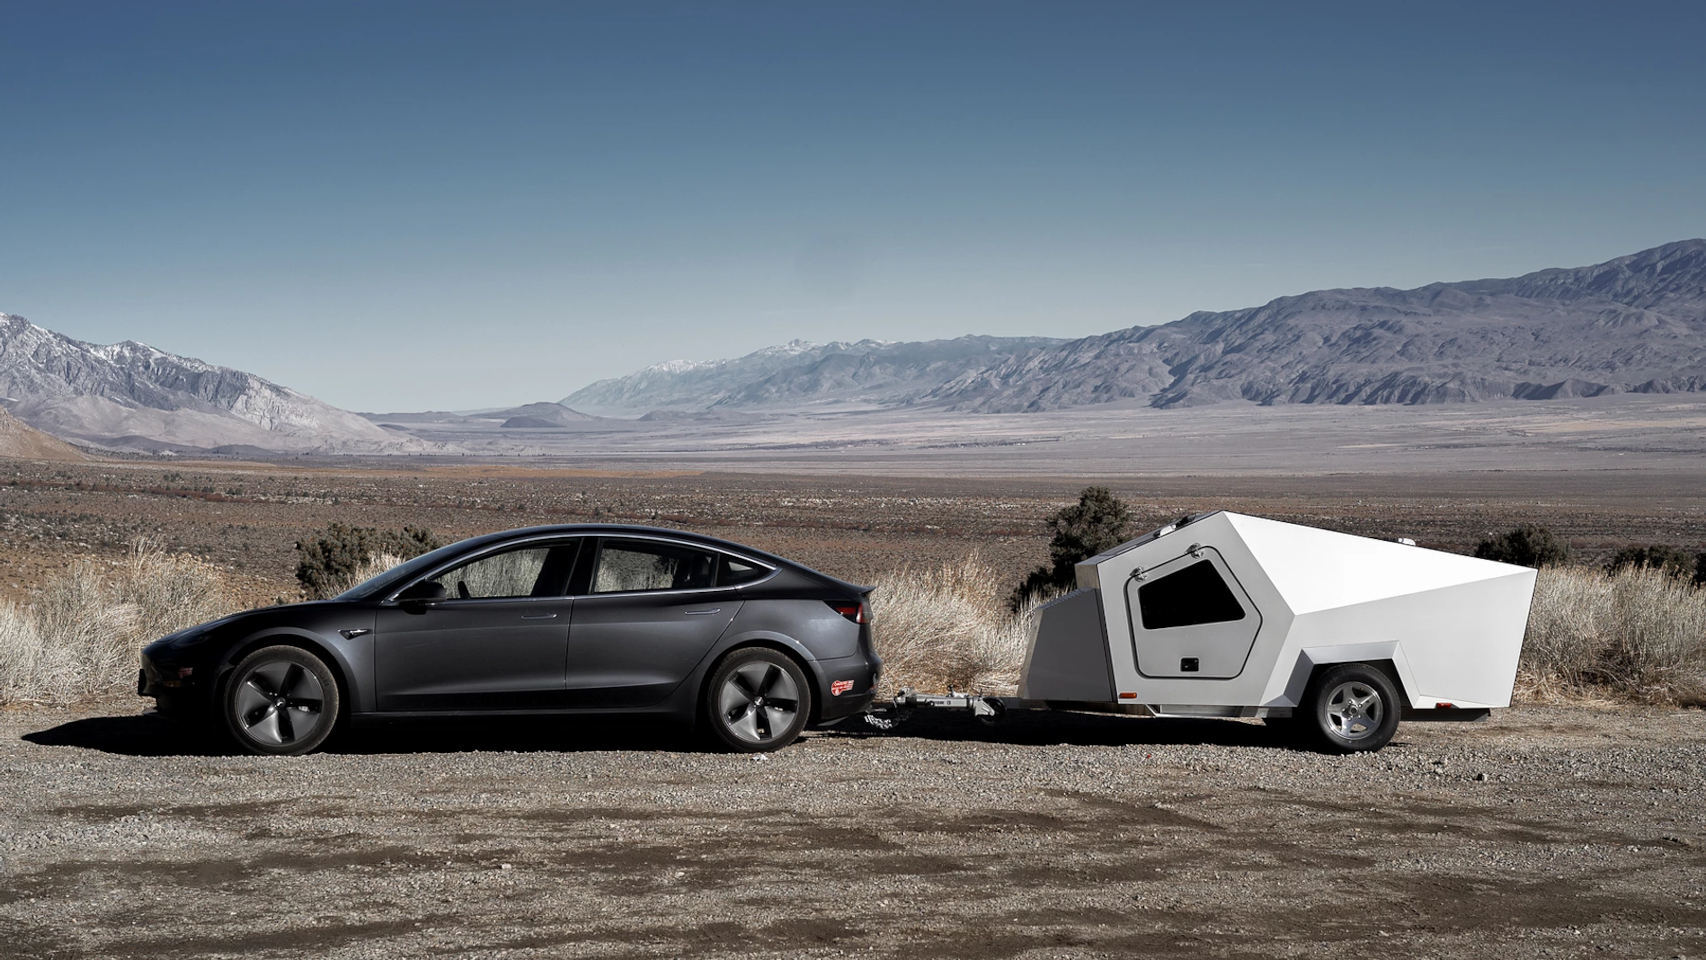 Esta caravana ha sido diseñada para coches como el Tesla Model 3